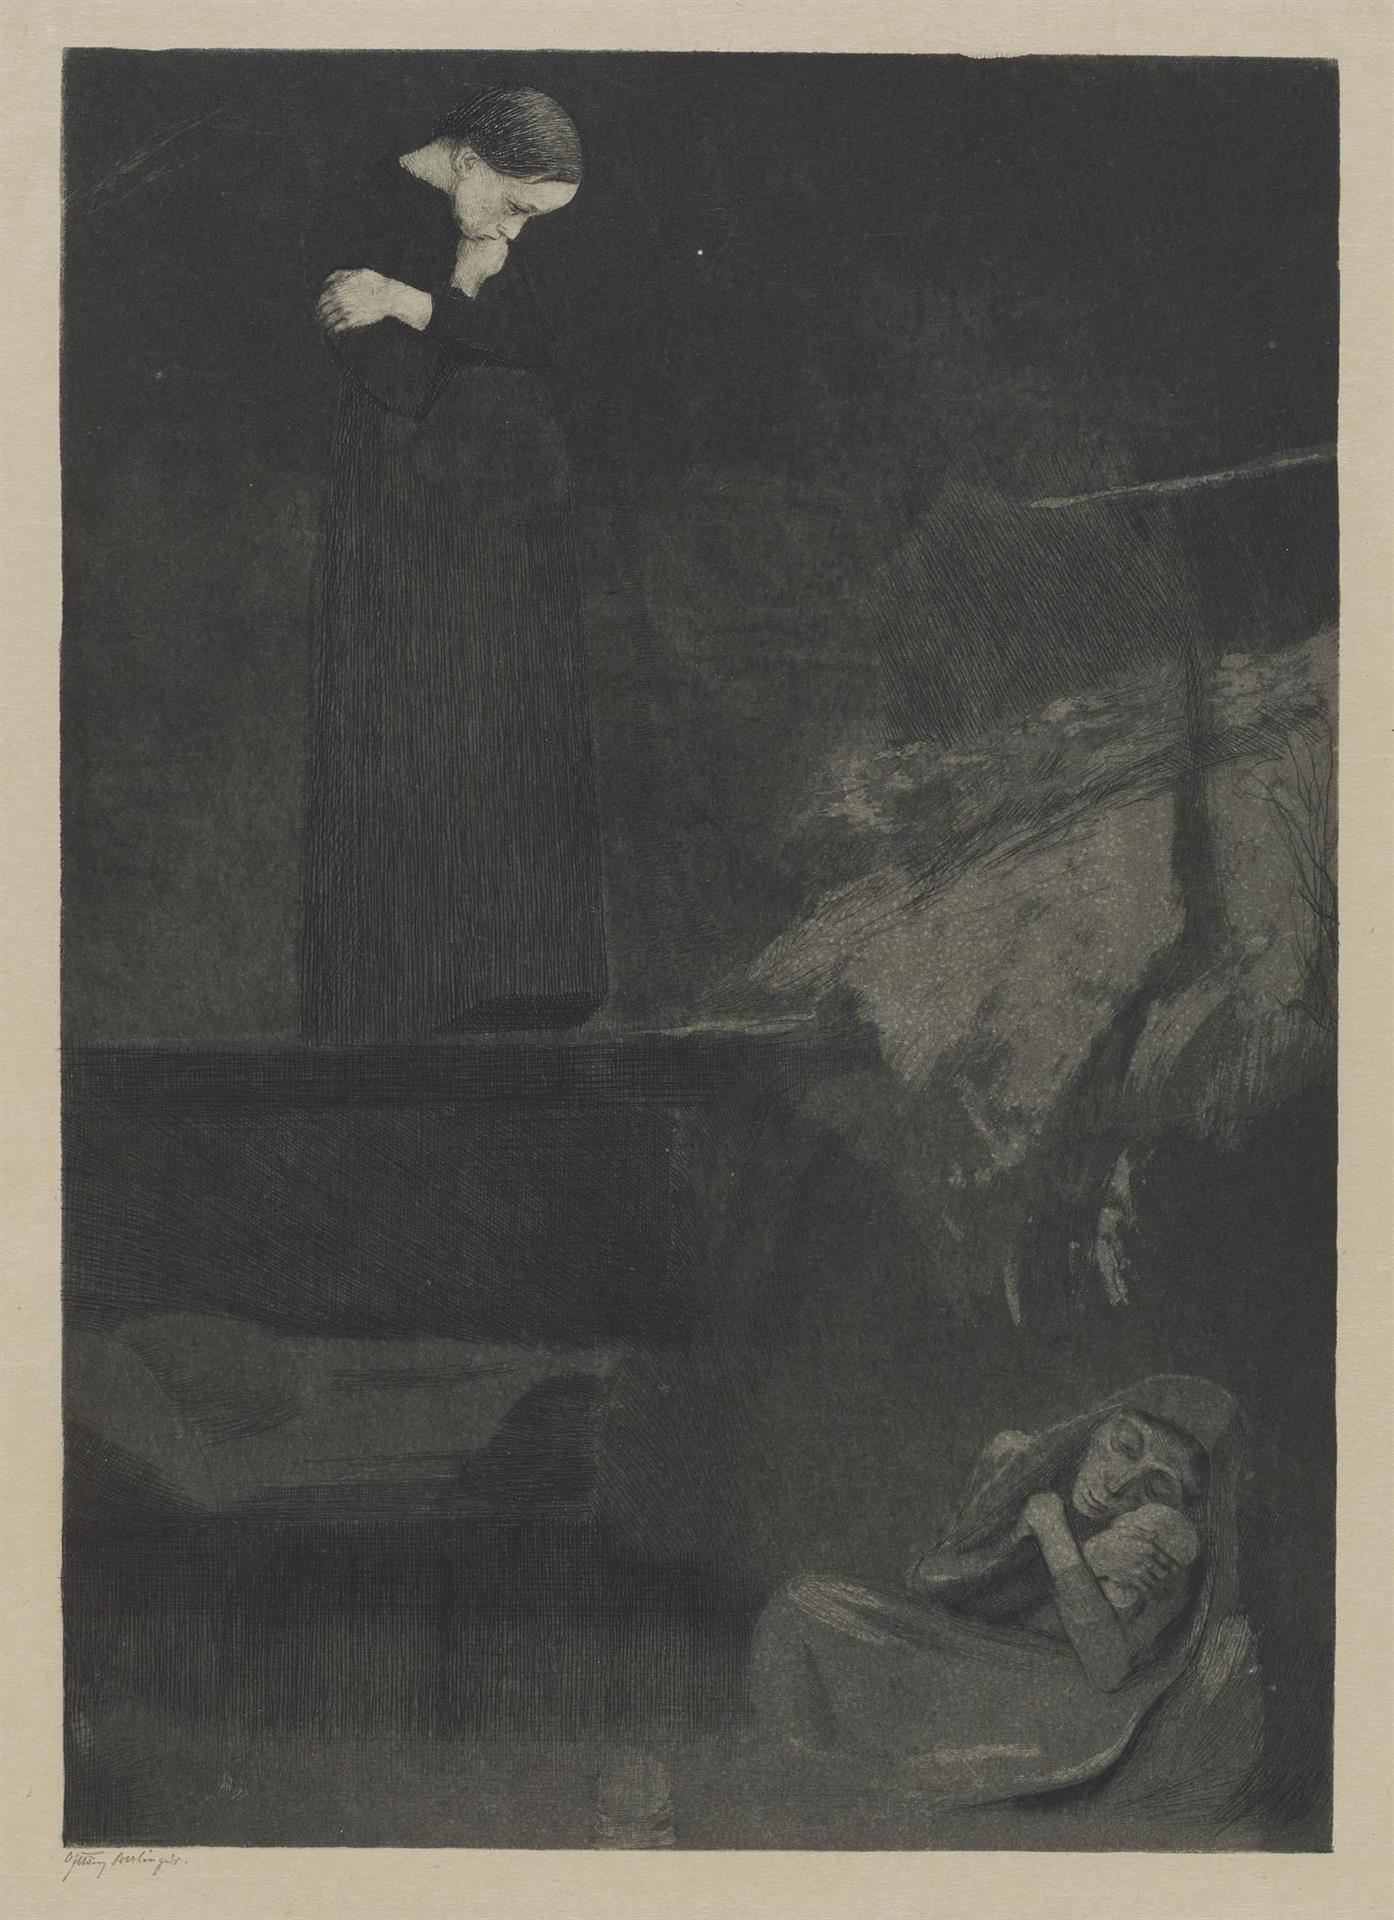 Käthe Kollwitz, Gretchen, 1899, Strichätzung, Kaltnadel, Aquatinta und Polierstahl, Kn 45 IV